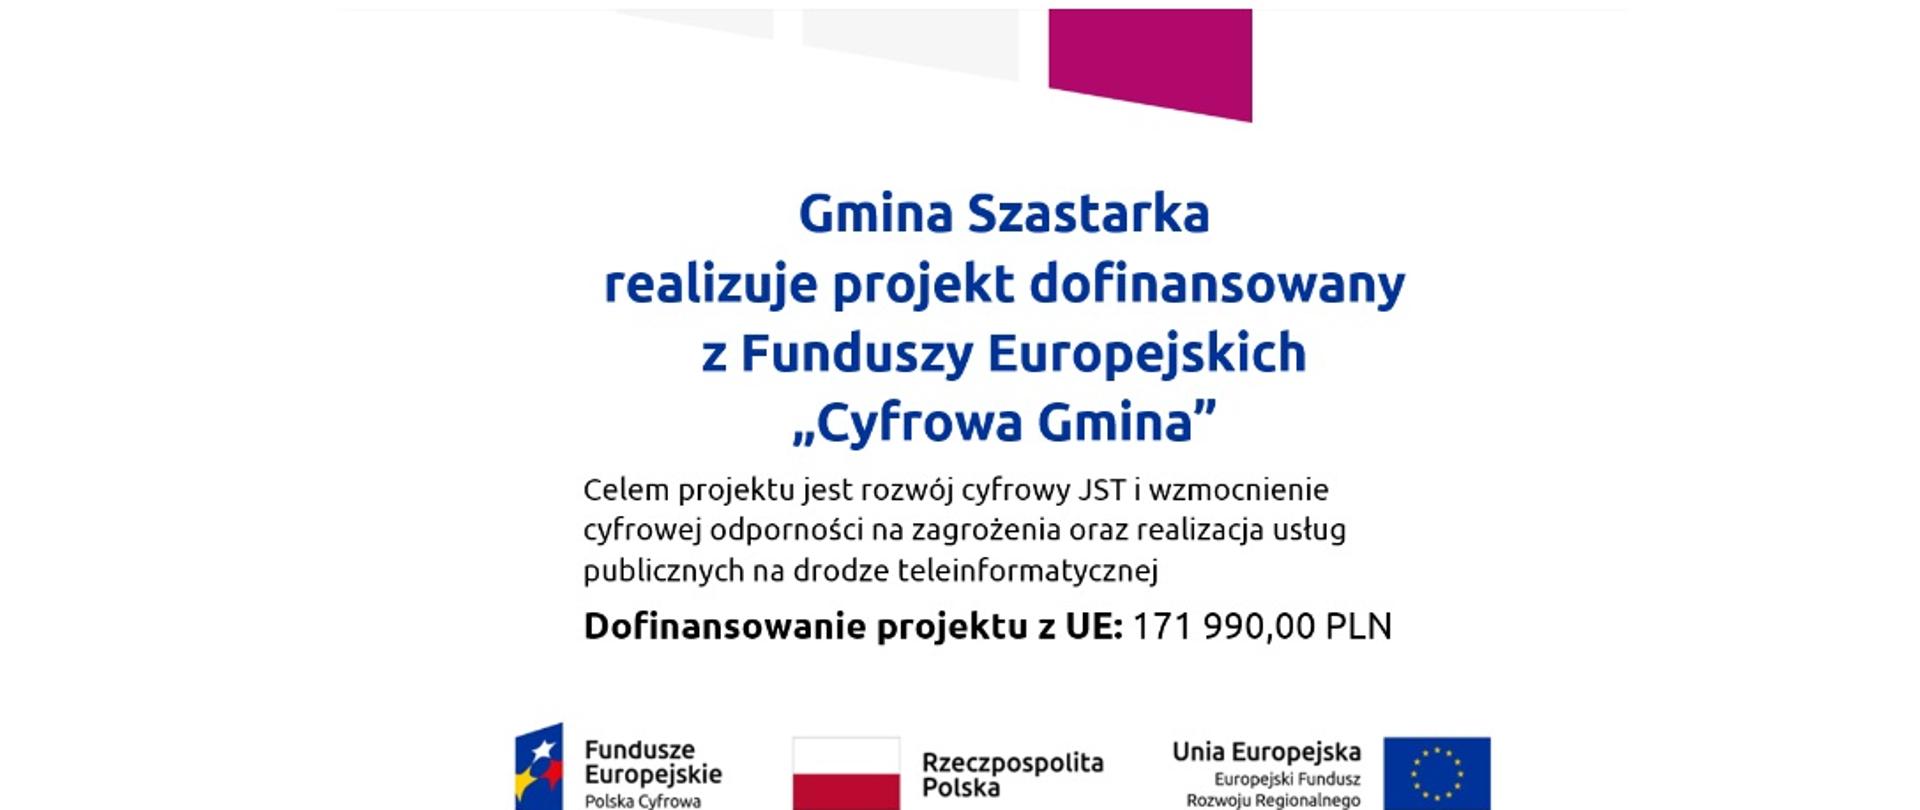 Gmina Szastarka realizuje projekt dofinansowany z Funduszy Europejskich „Cyfrowa Gmina”